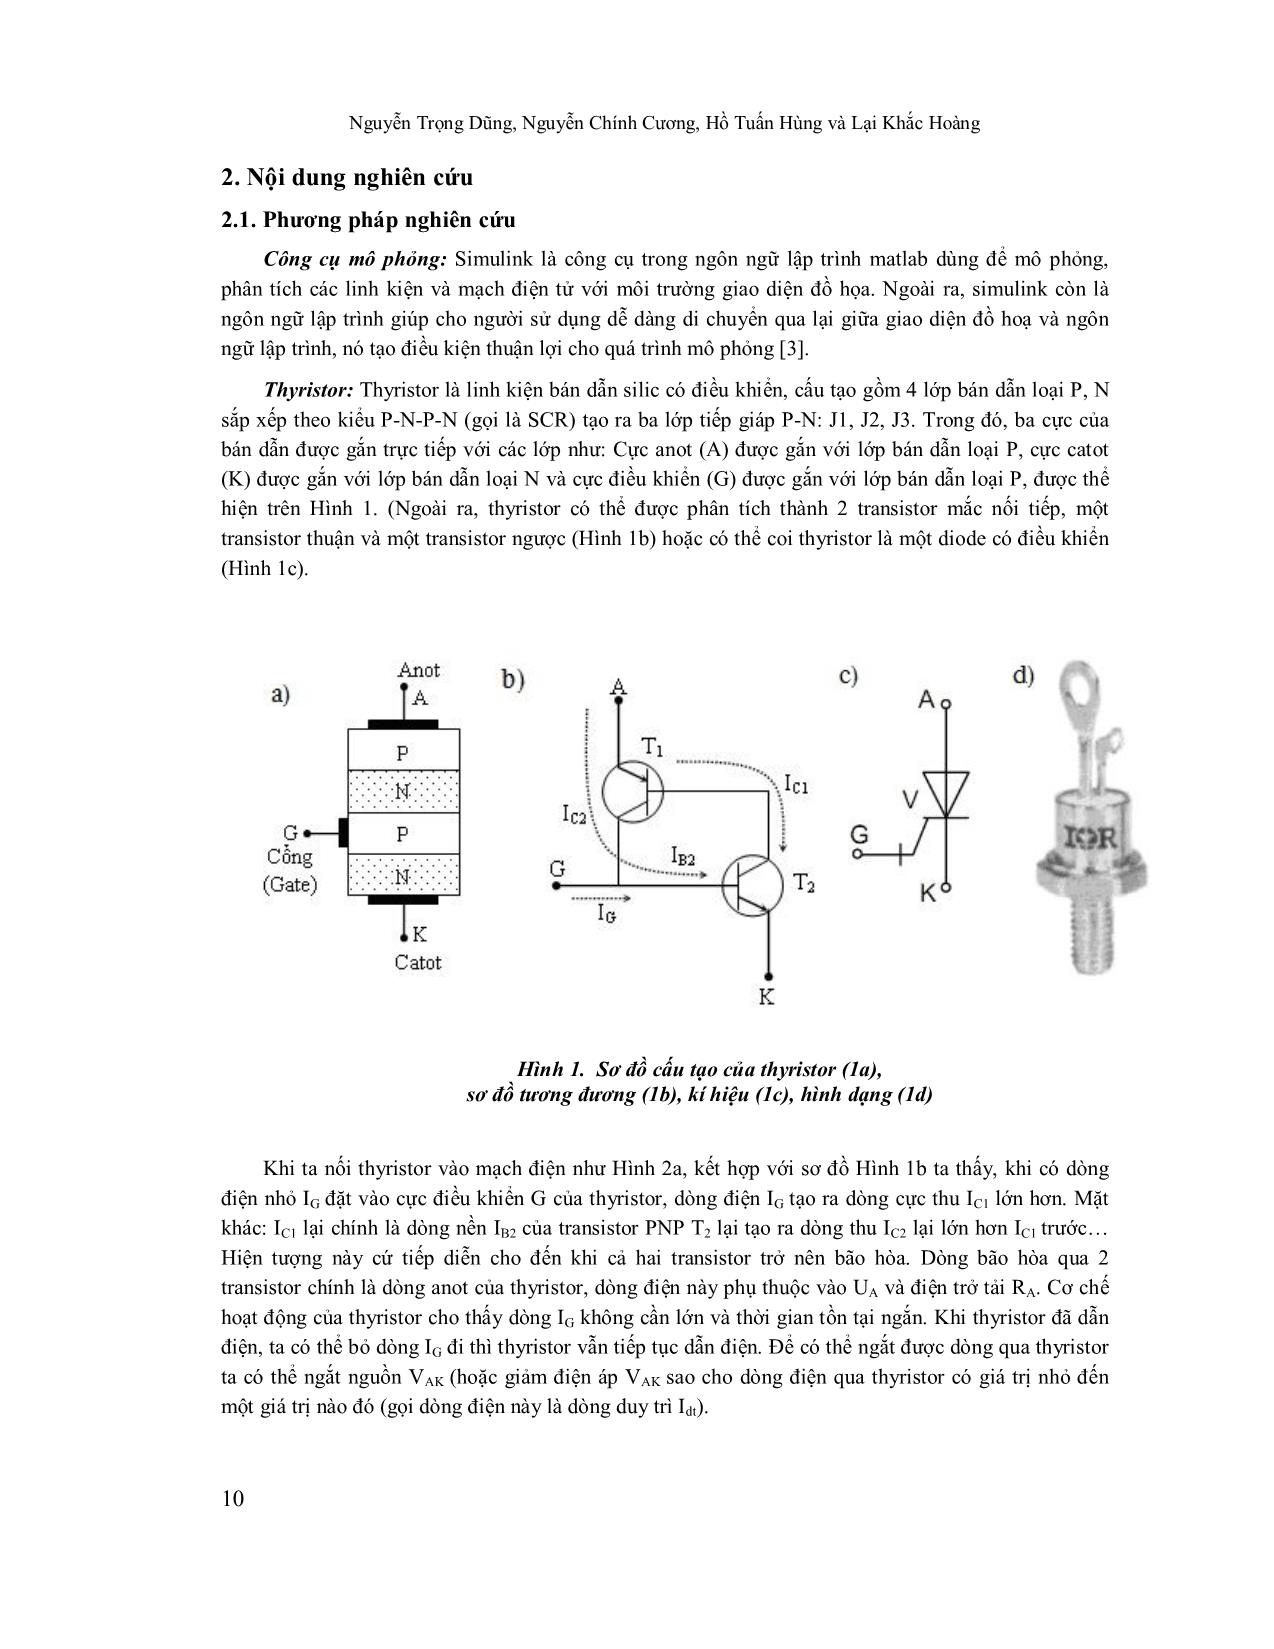 Mô phỏng ứng dụng thyristor trong điều khiển động cơ điện xoay chiều trang 2